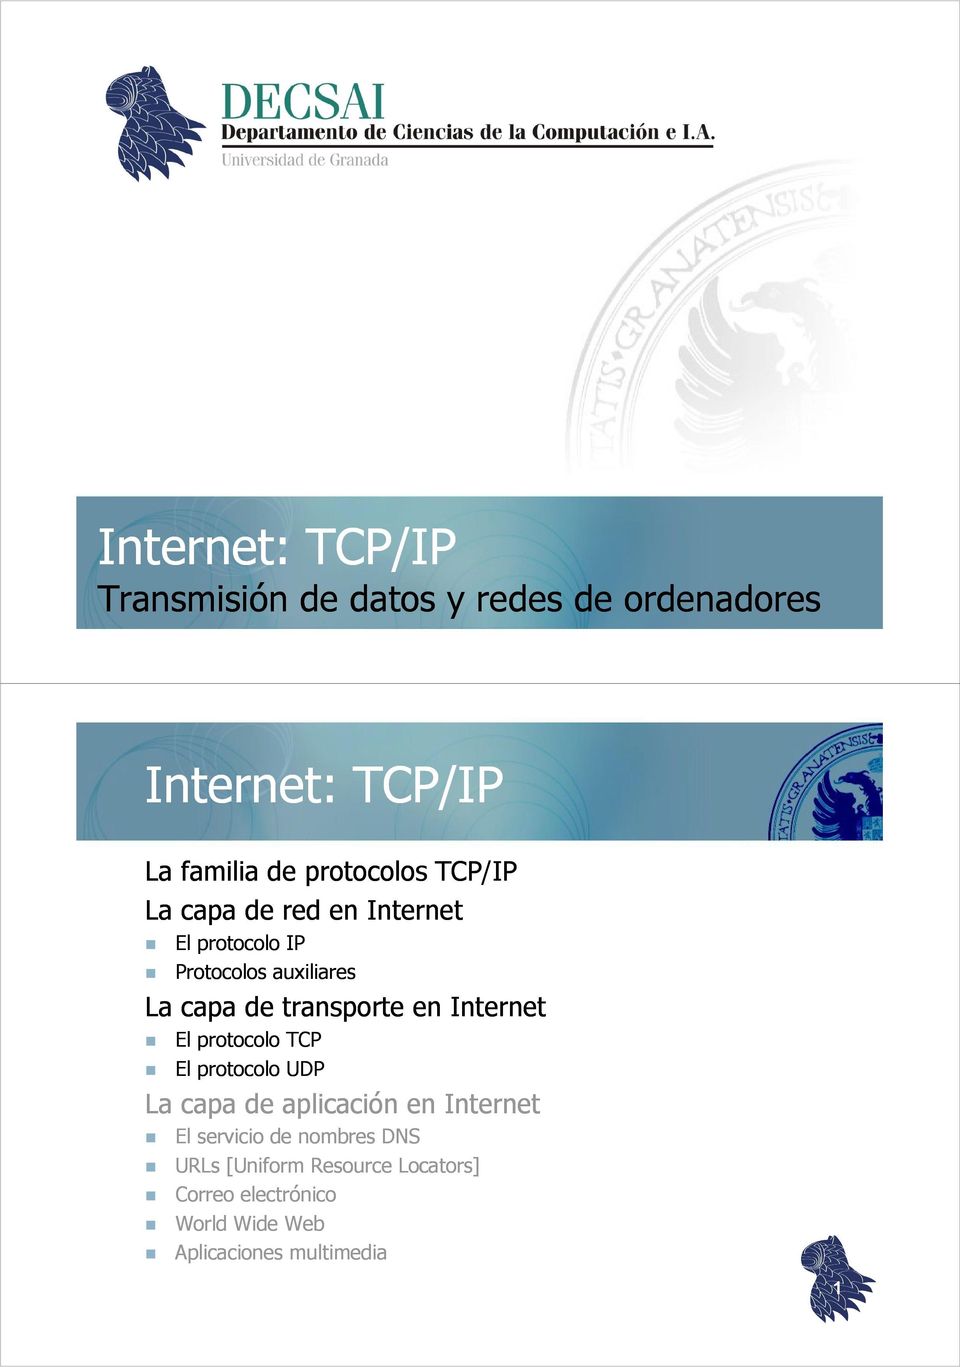 transporte en Internet El protocolo TCP El protocolo UDP La capa de aplicación en Internet El